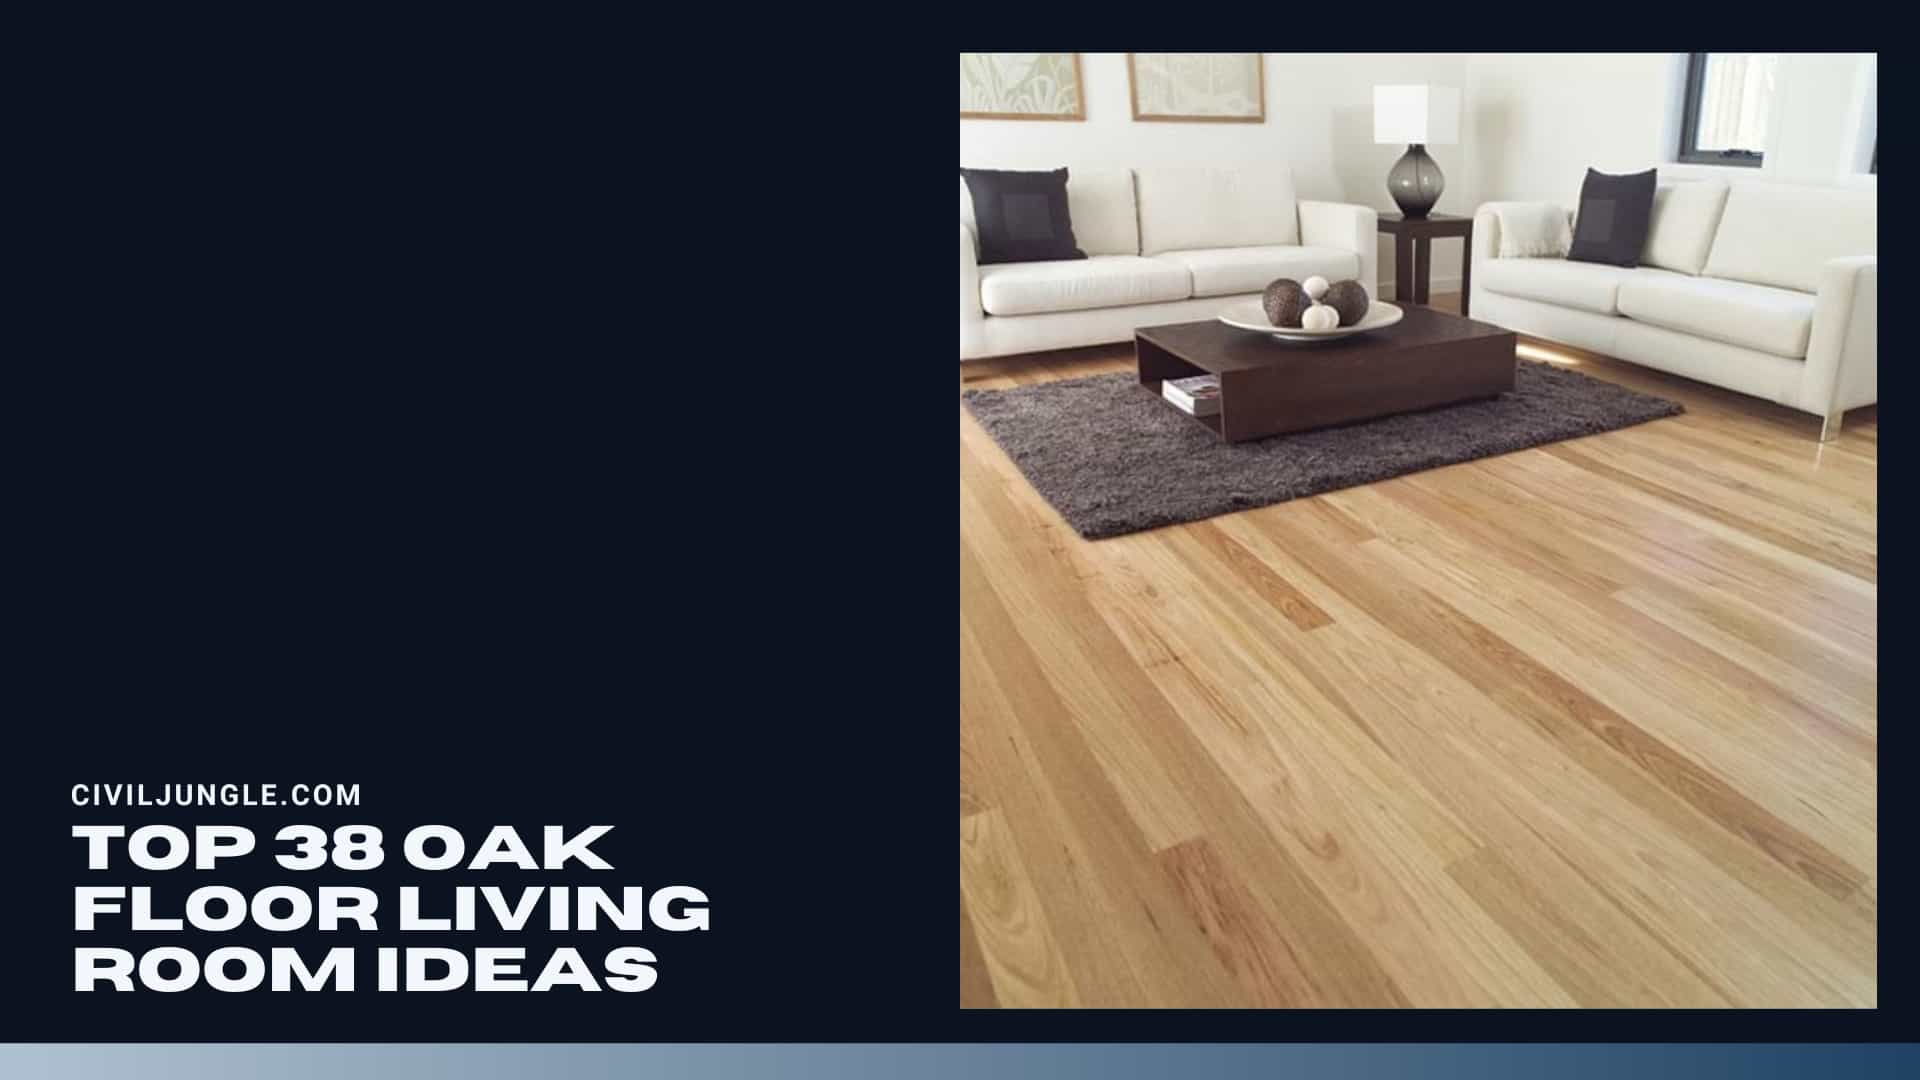 Top 38 Oak Floor Living Room Ideas